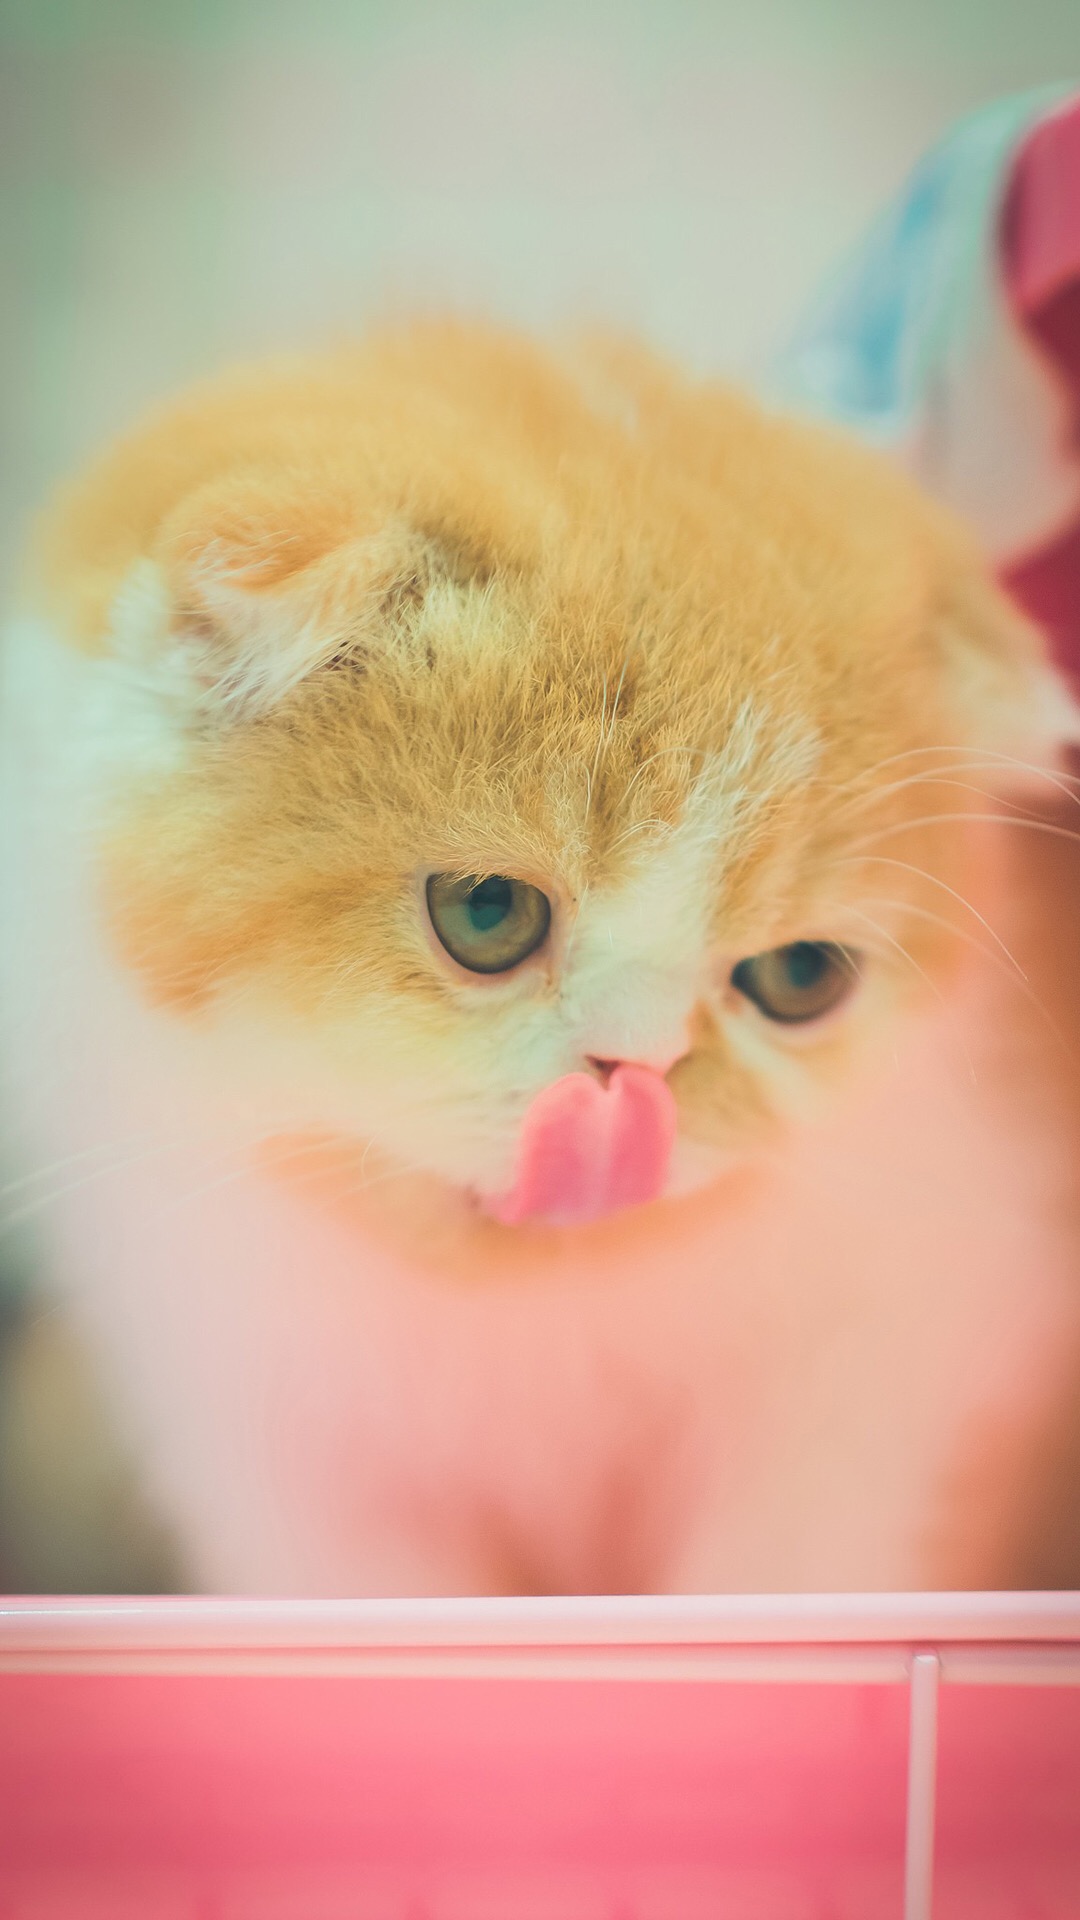 可爱喵星人卖萌图片 可爱的小猫咪高清手机壁纸(7)